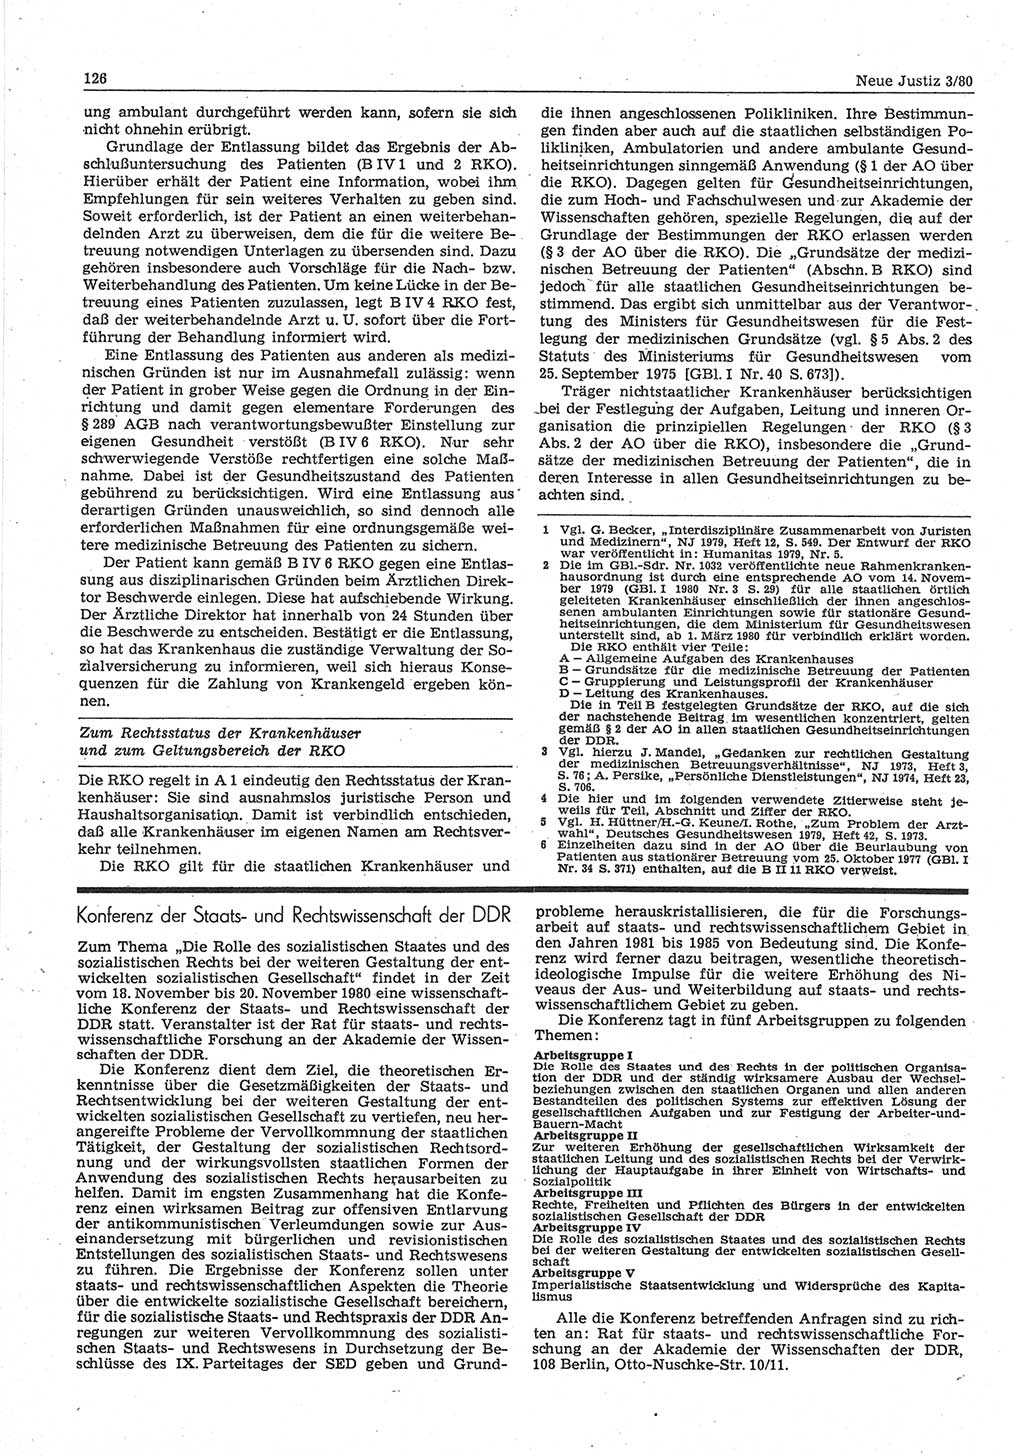 Neue Justiz (NJ), Zeitschrift für sozialistisches Recht und Gesetzlichkeit [Deutsche Demokratische Republik (DDR)], 34. Jahrgang 1980, Seite 126 (NJ DDR 1980, S. 126)